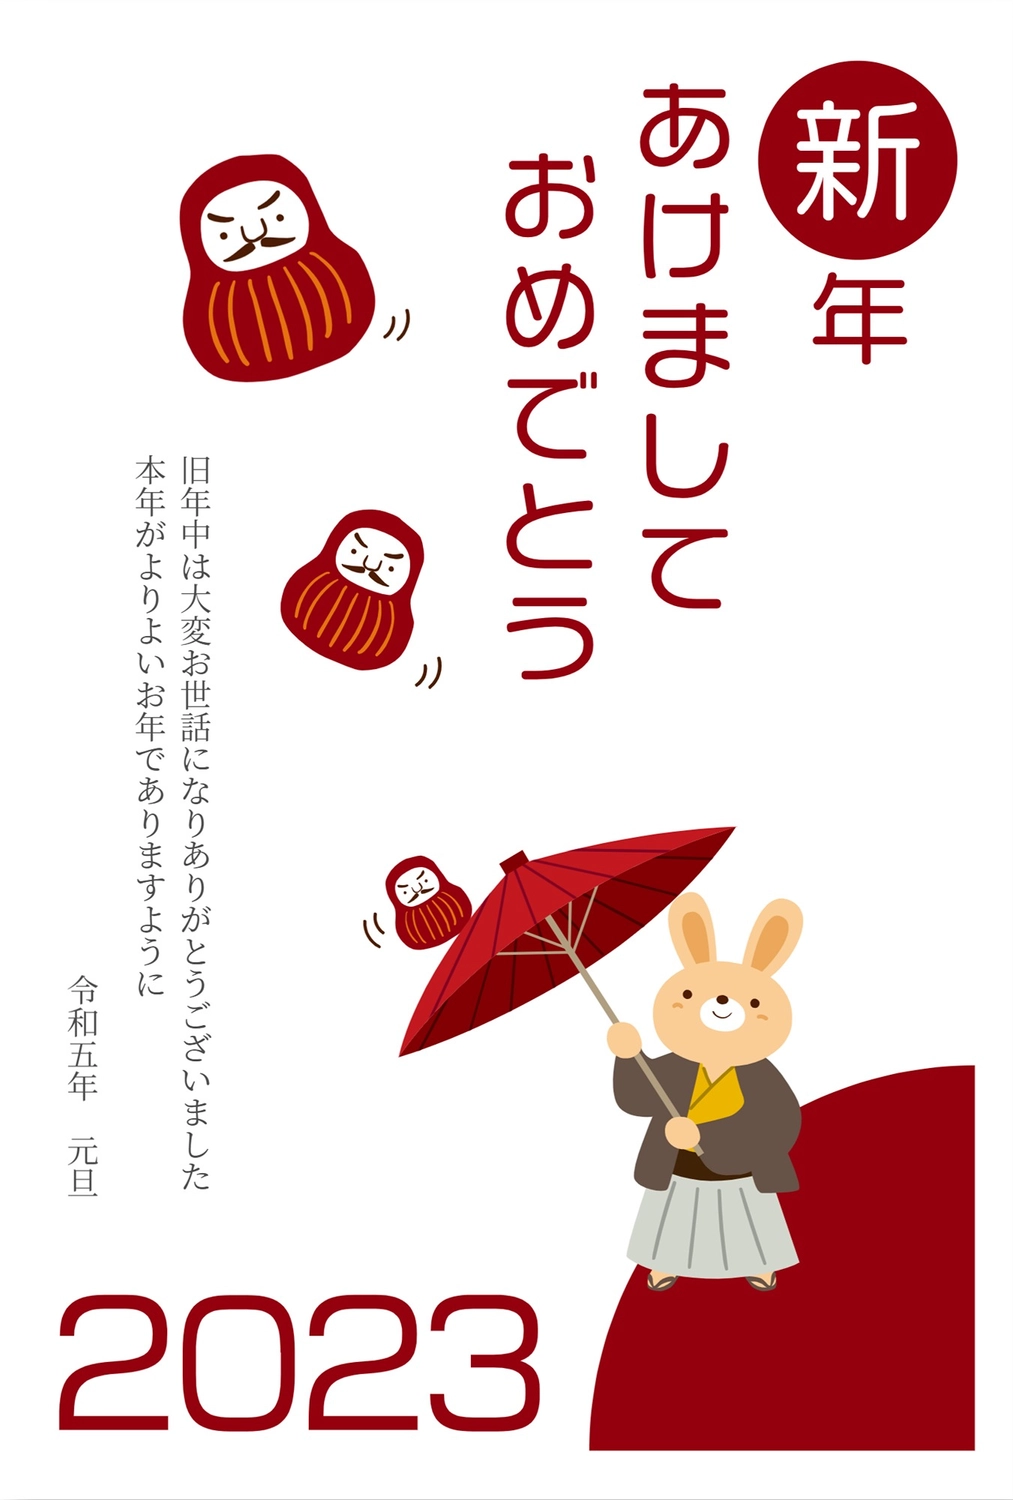 傘回しをするうさぎの年賀状, 연하장, 令和, 傘回し, 새해 카드 템플릿